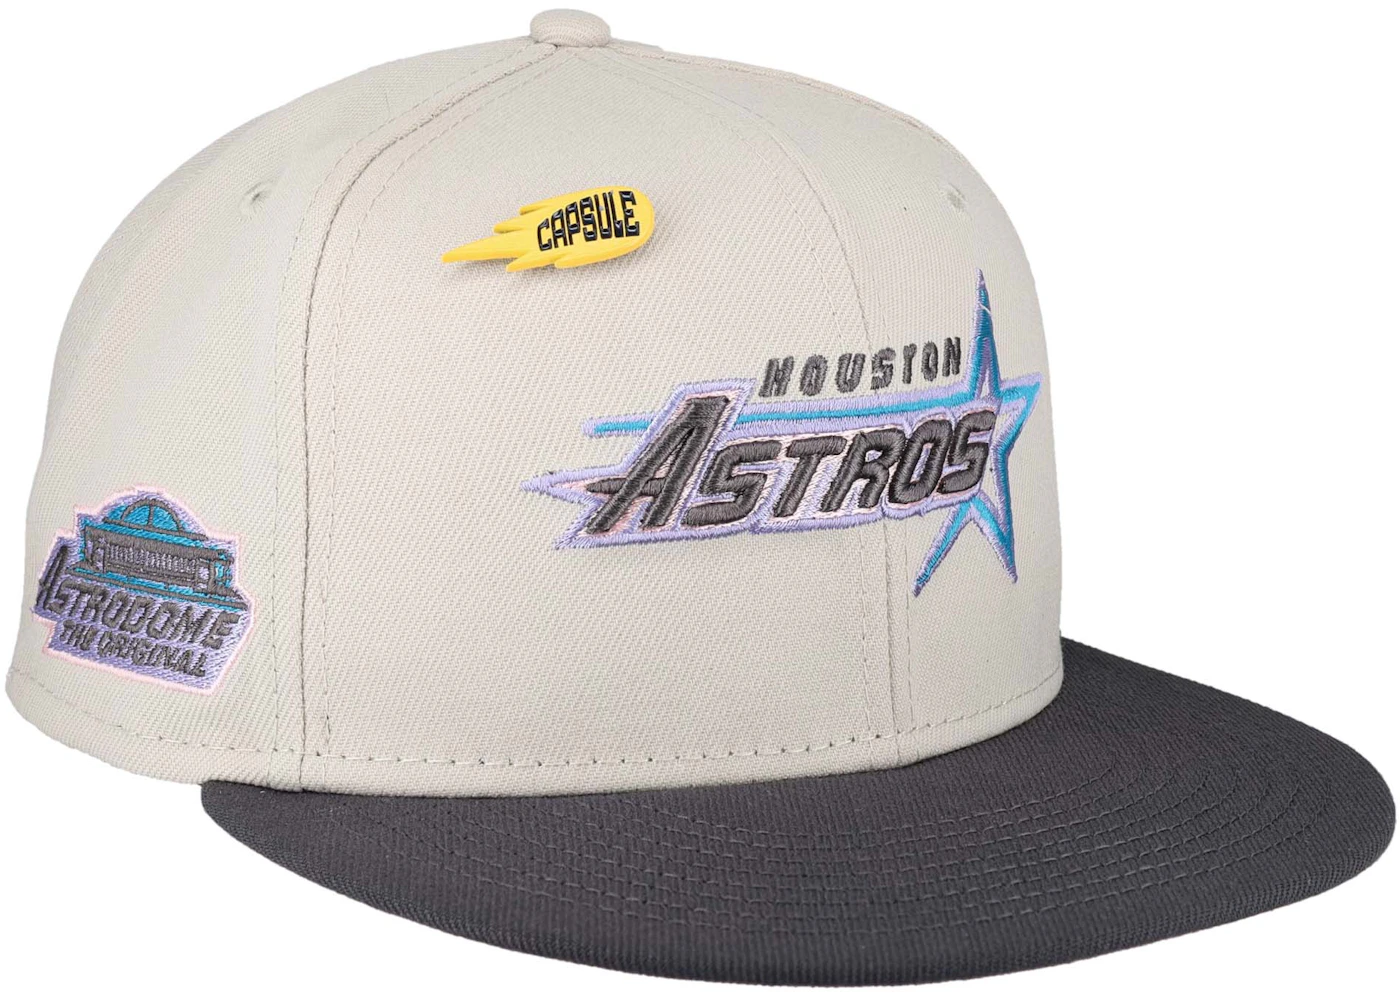 New Era Houston Astros Capsule Chrome Collection 1986 Astrodome